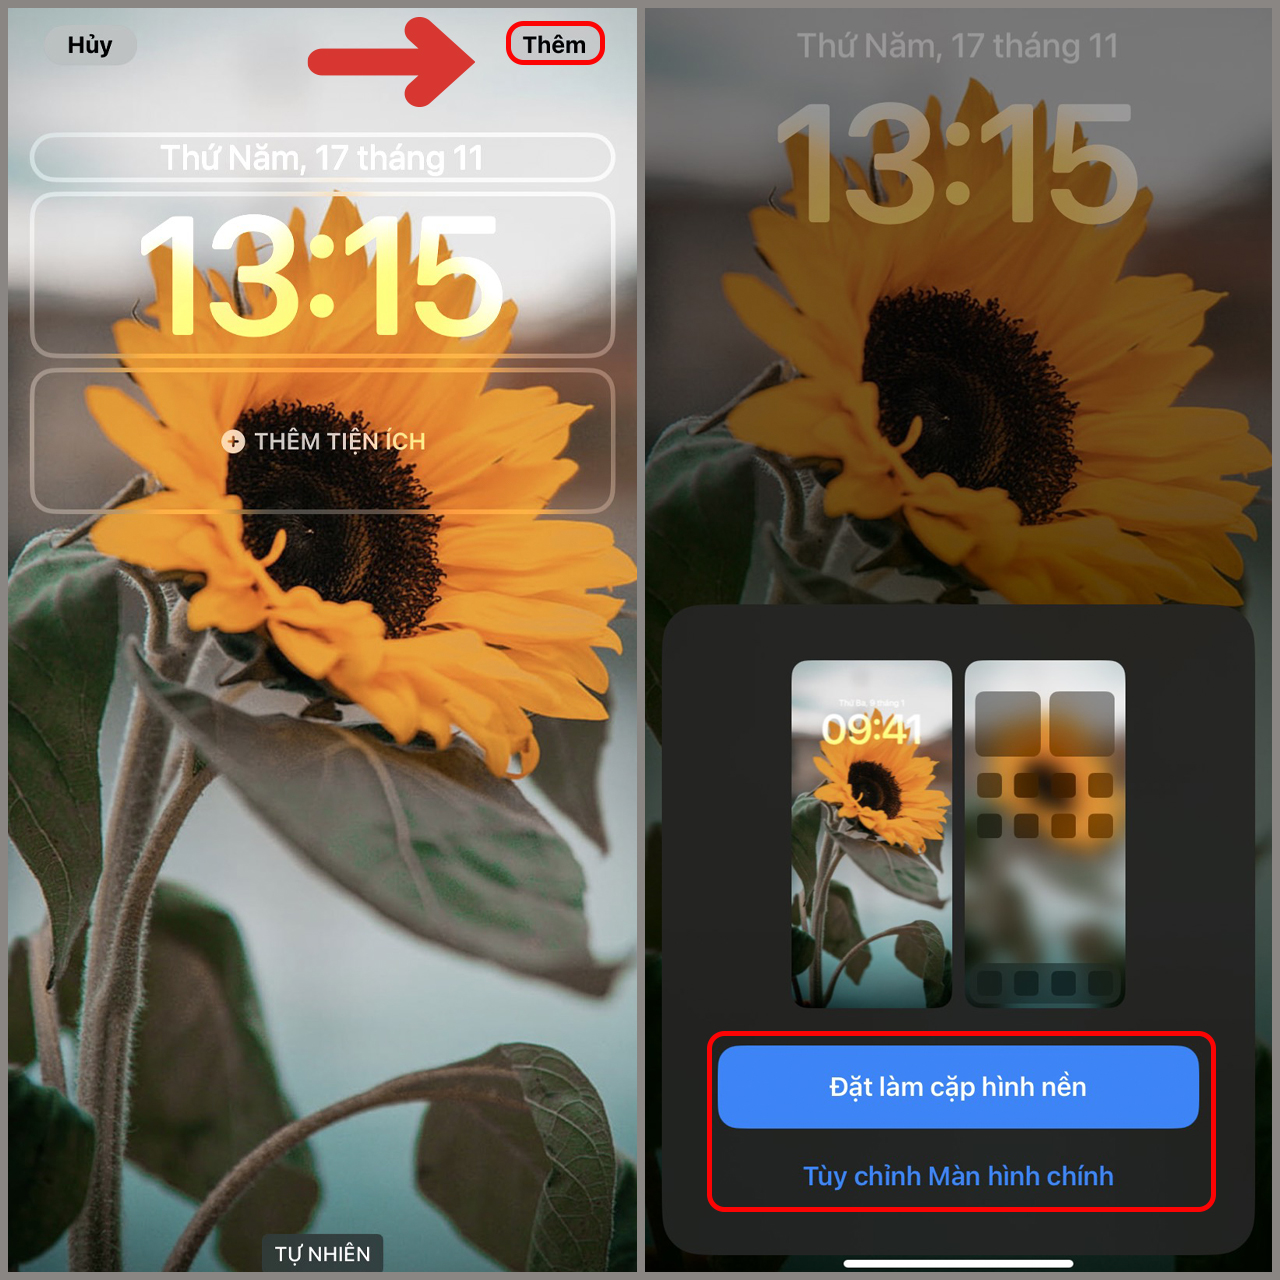 iPhone hình nền điện thoại hoa hướng dương là một cách tuyệt vời để thể hiện sự cá tính và phóng khoáng của bạn thông qua giao diện điện thoại của bạn. Với ánh nắng vàng rực rỡ của hoa hướng dương, hình nền này sẽ làm cho iPhone của bạn trở nên đặc biệt hơn bao giờ hết.